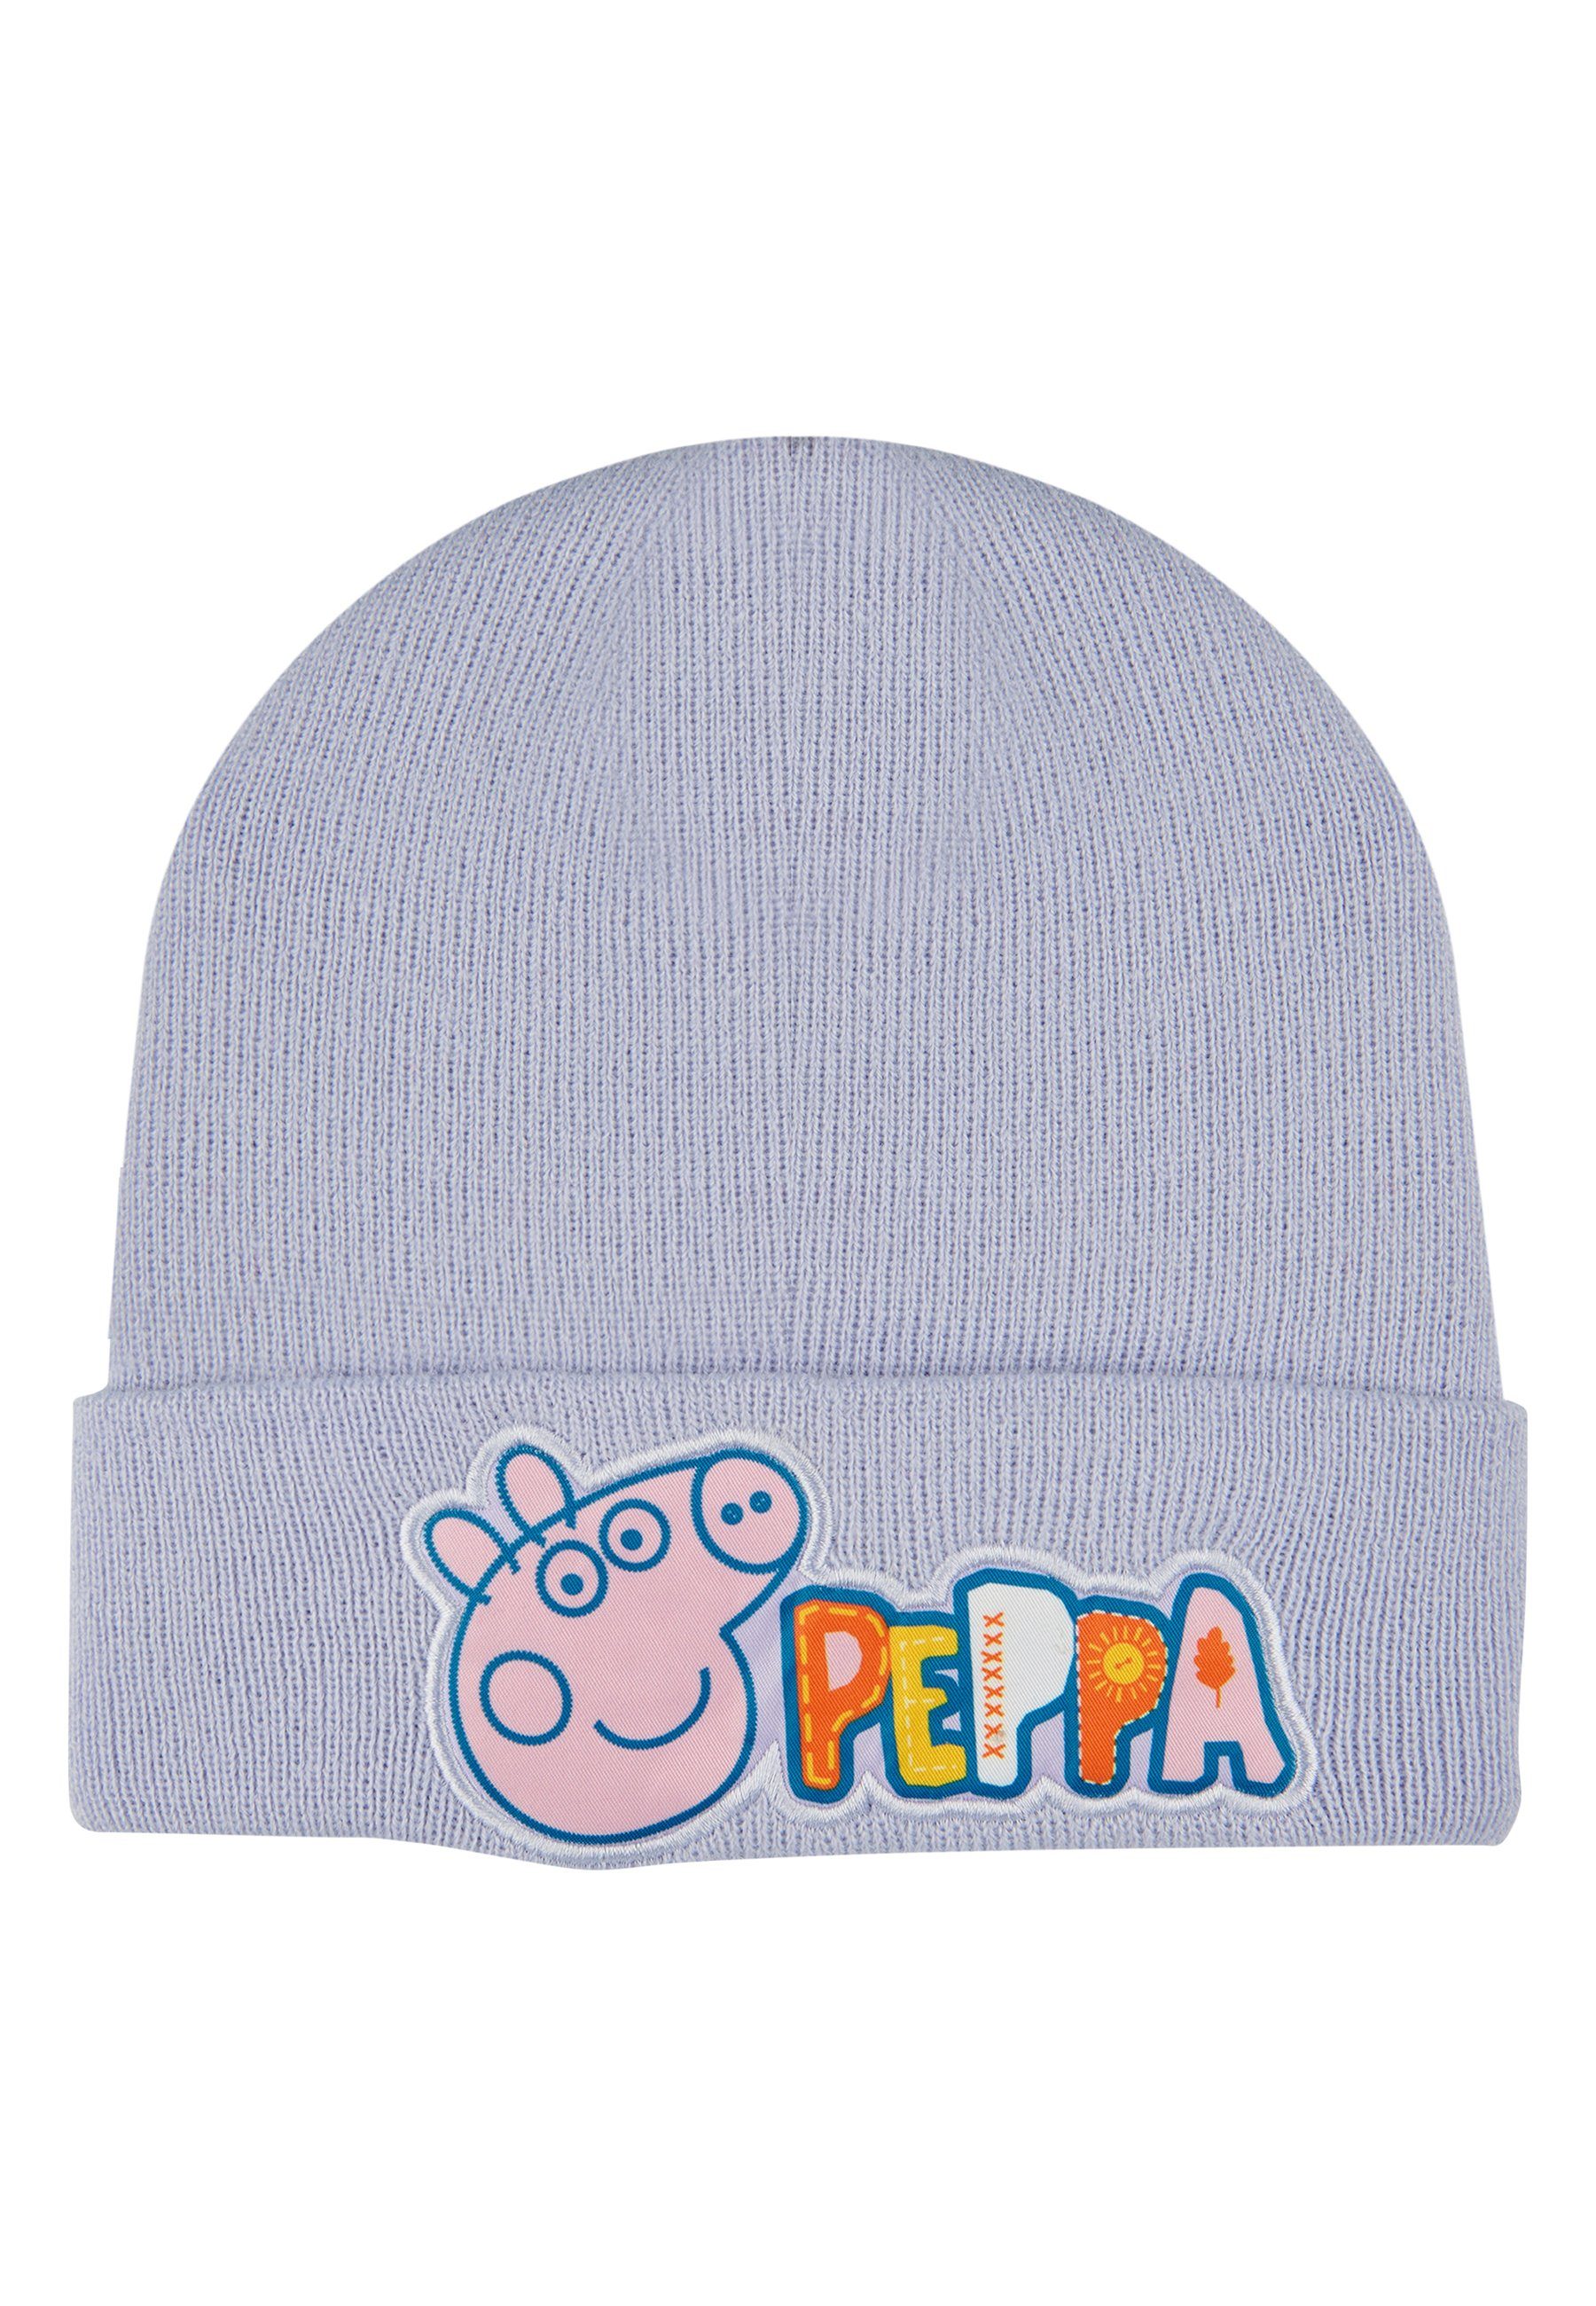 ONOMATO! Beanie Peppa Wutz Pig Kinder Mädchen Winter-Mütze